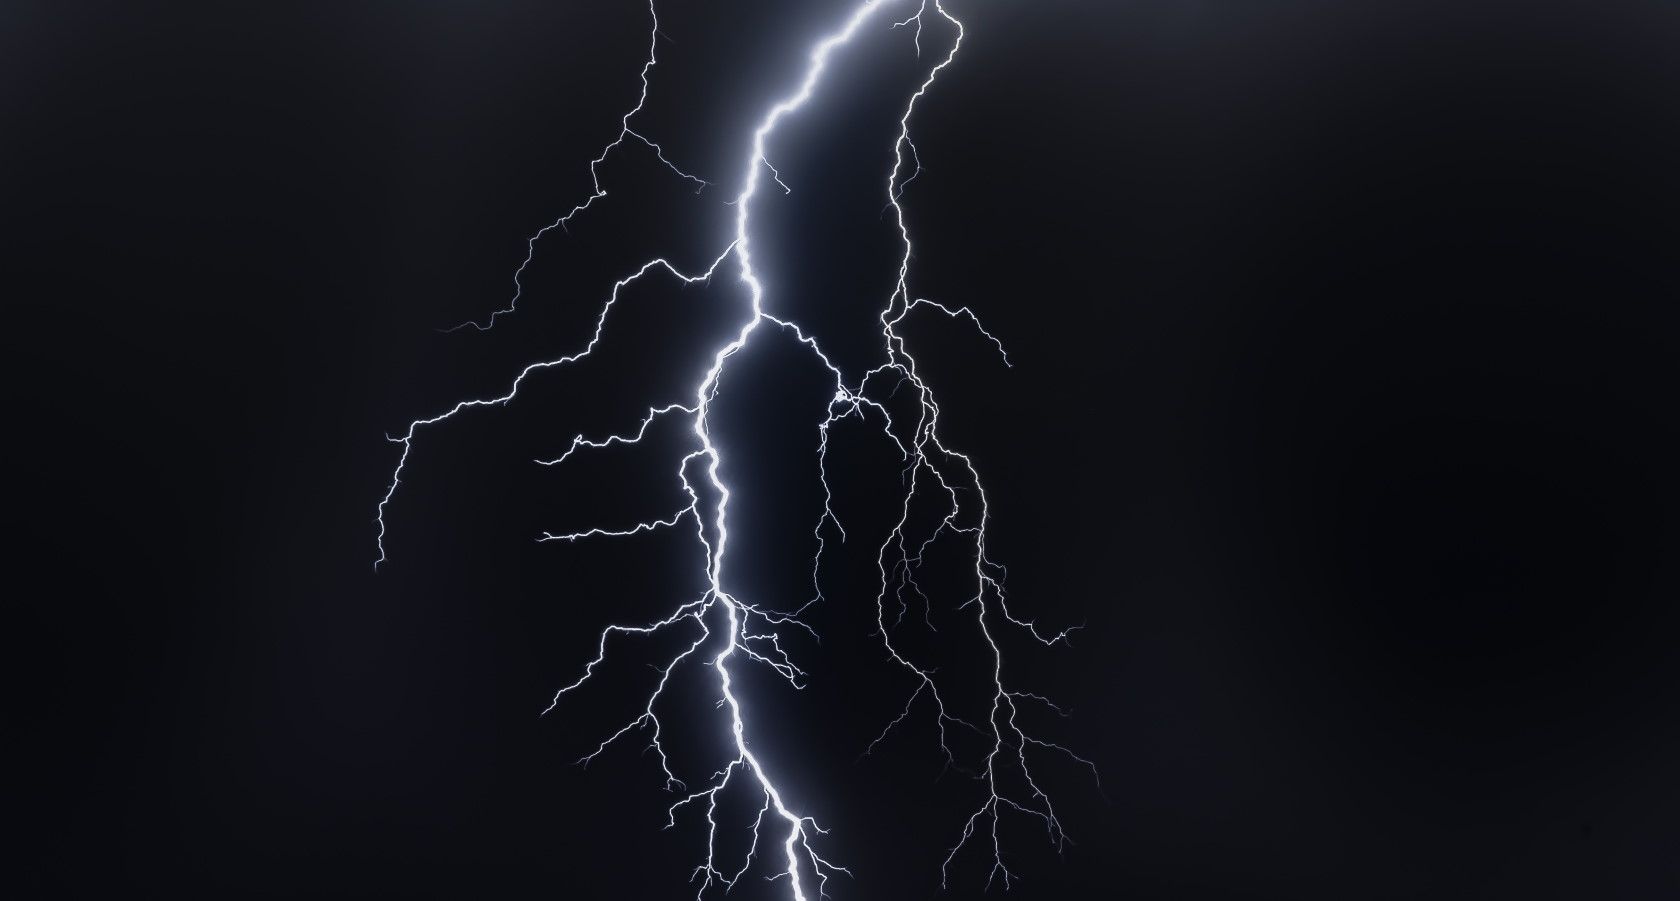 Lightning bolt striking in dark night sky